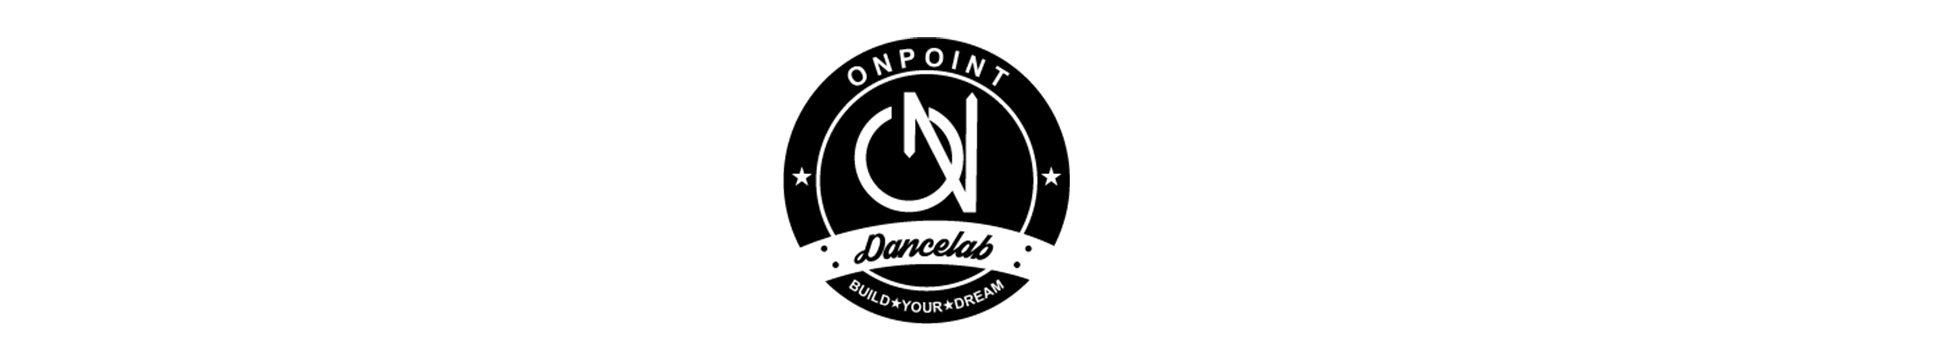 OnPoint Dancelab